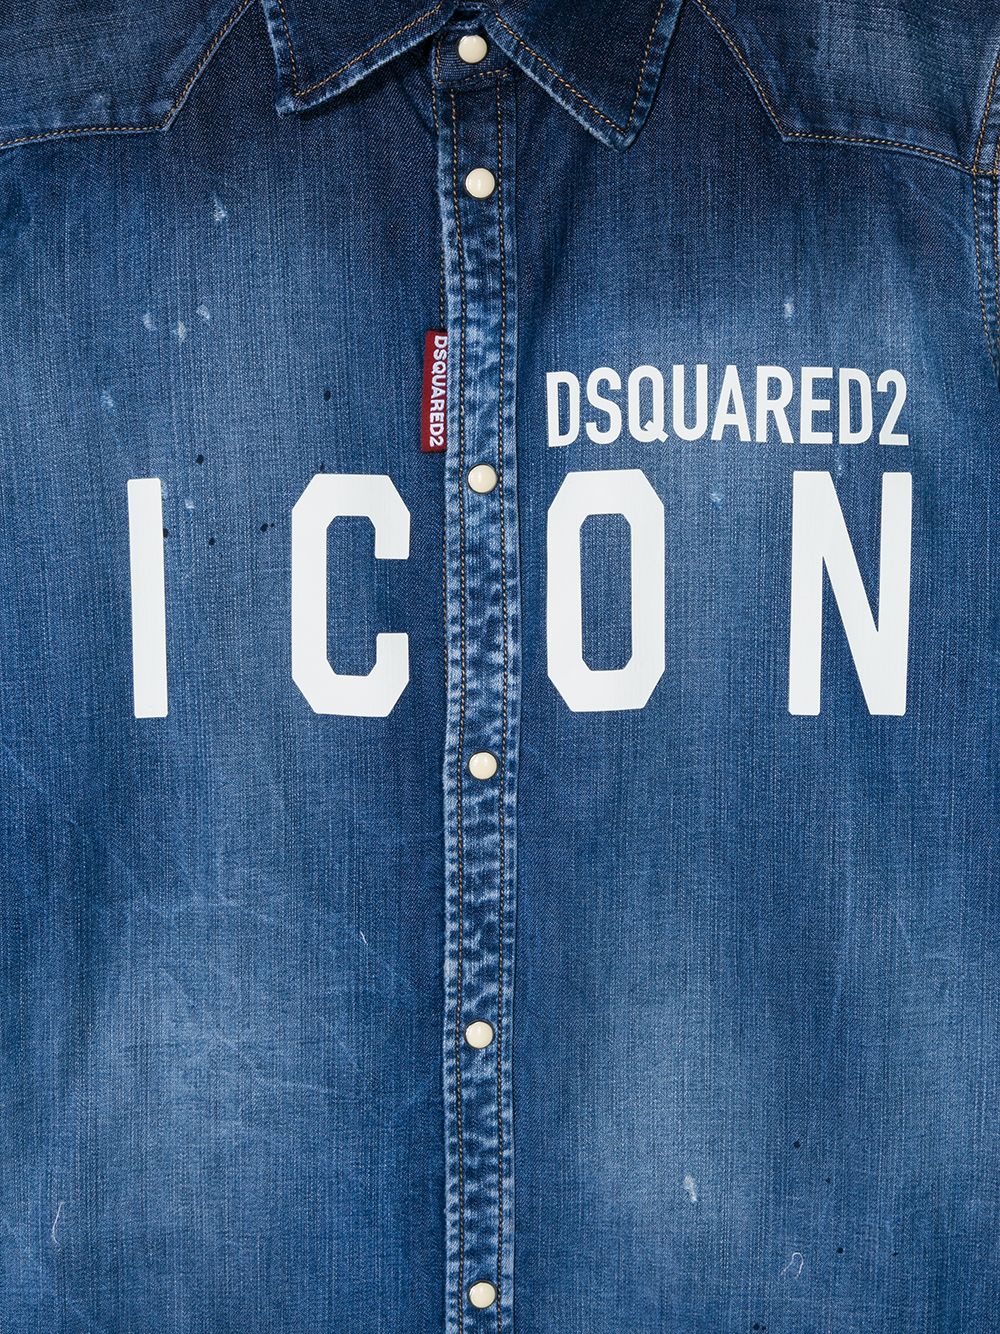 фото Dsquared2 kids джинсовая рубашка с эффектом разбрызганной краски и логотипом